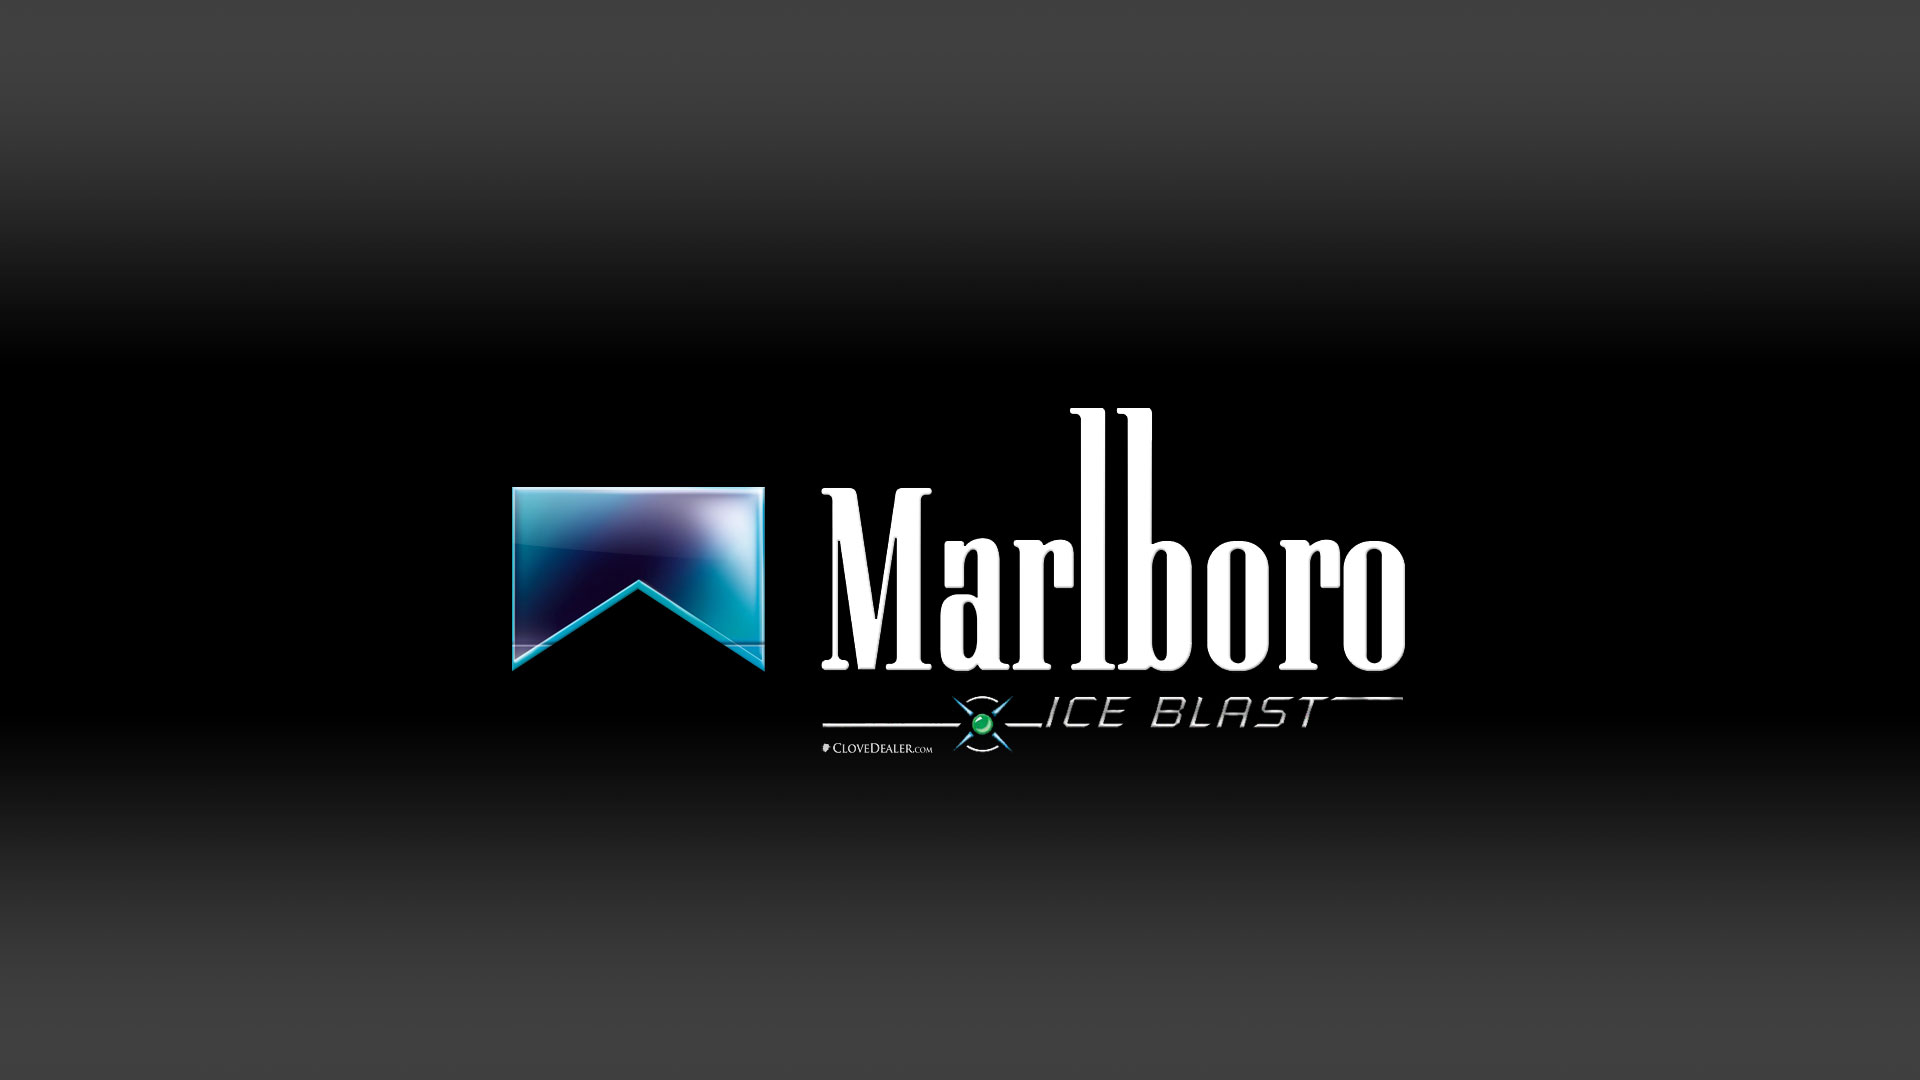 Marlboro Ice Cigarettes Wallpaper HD by